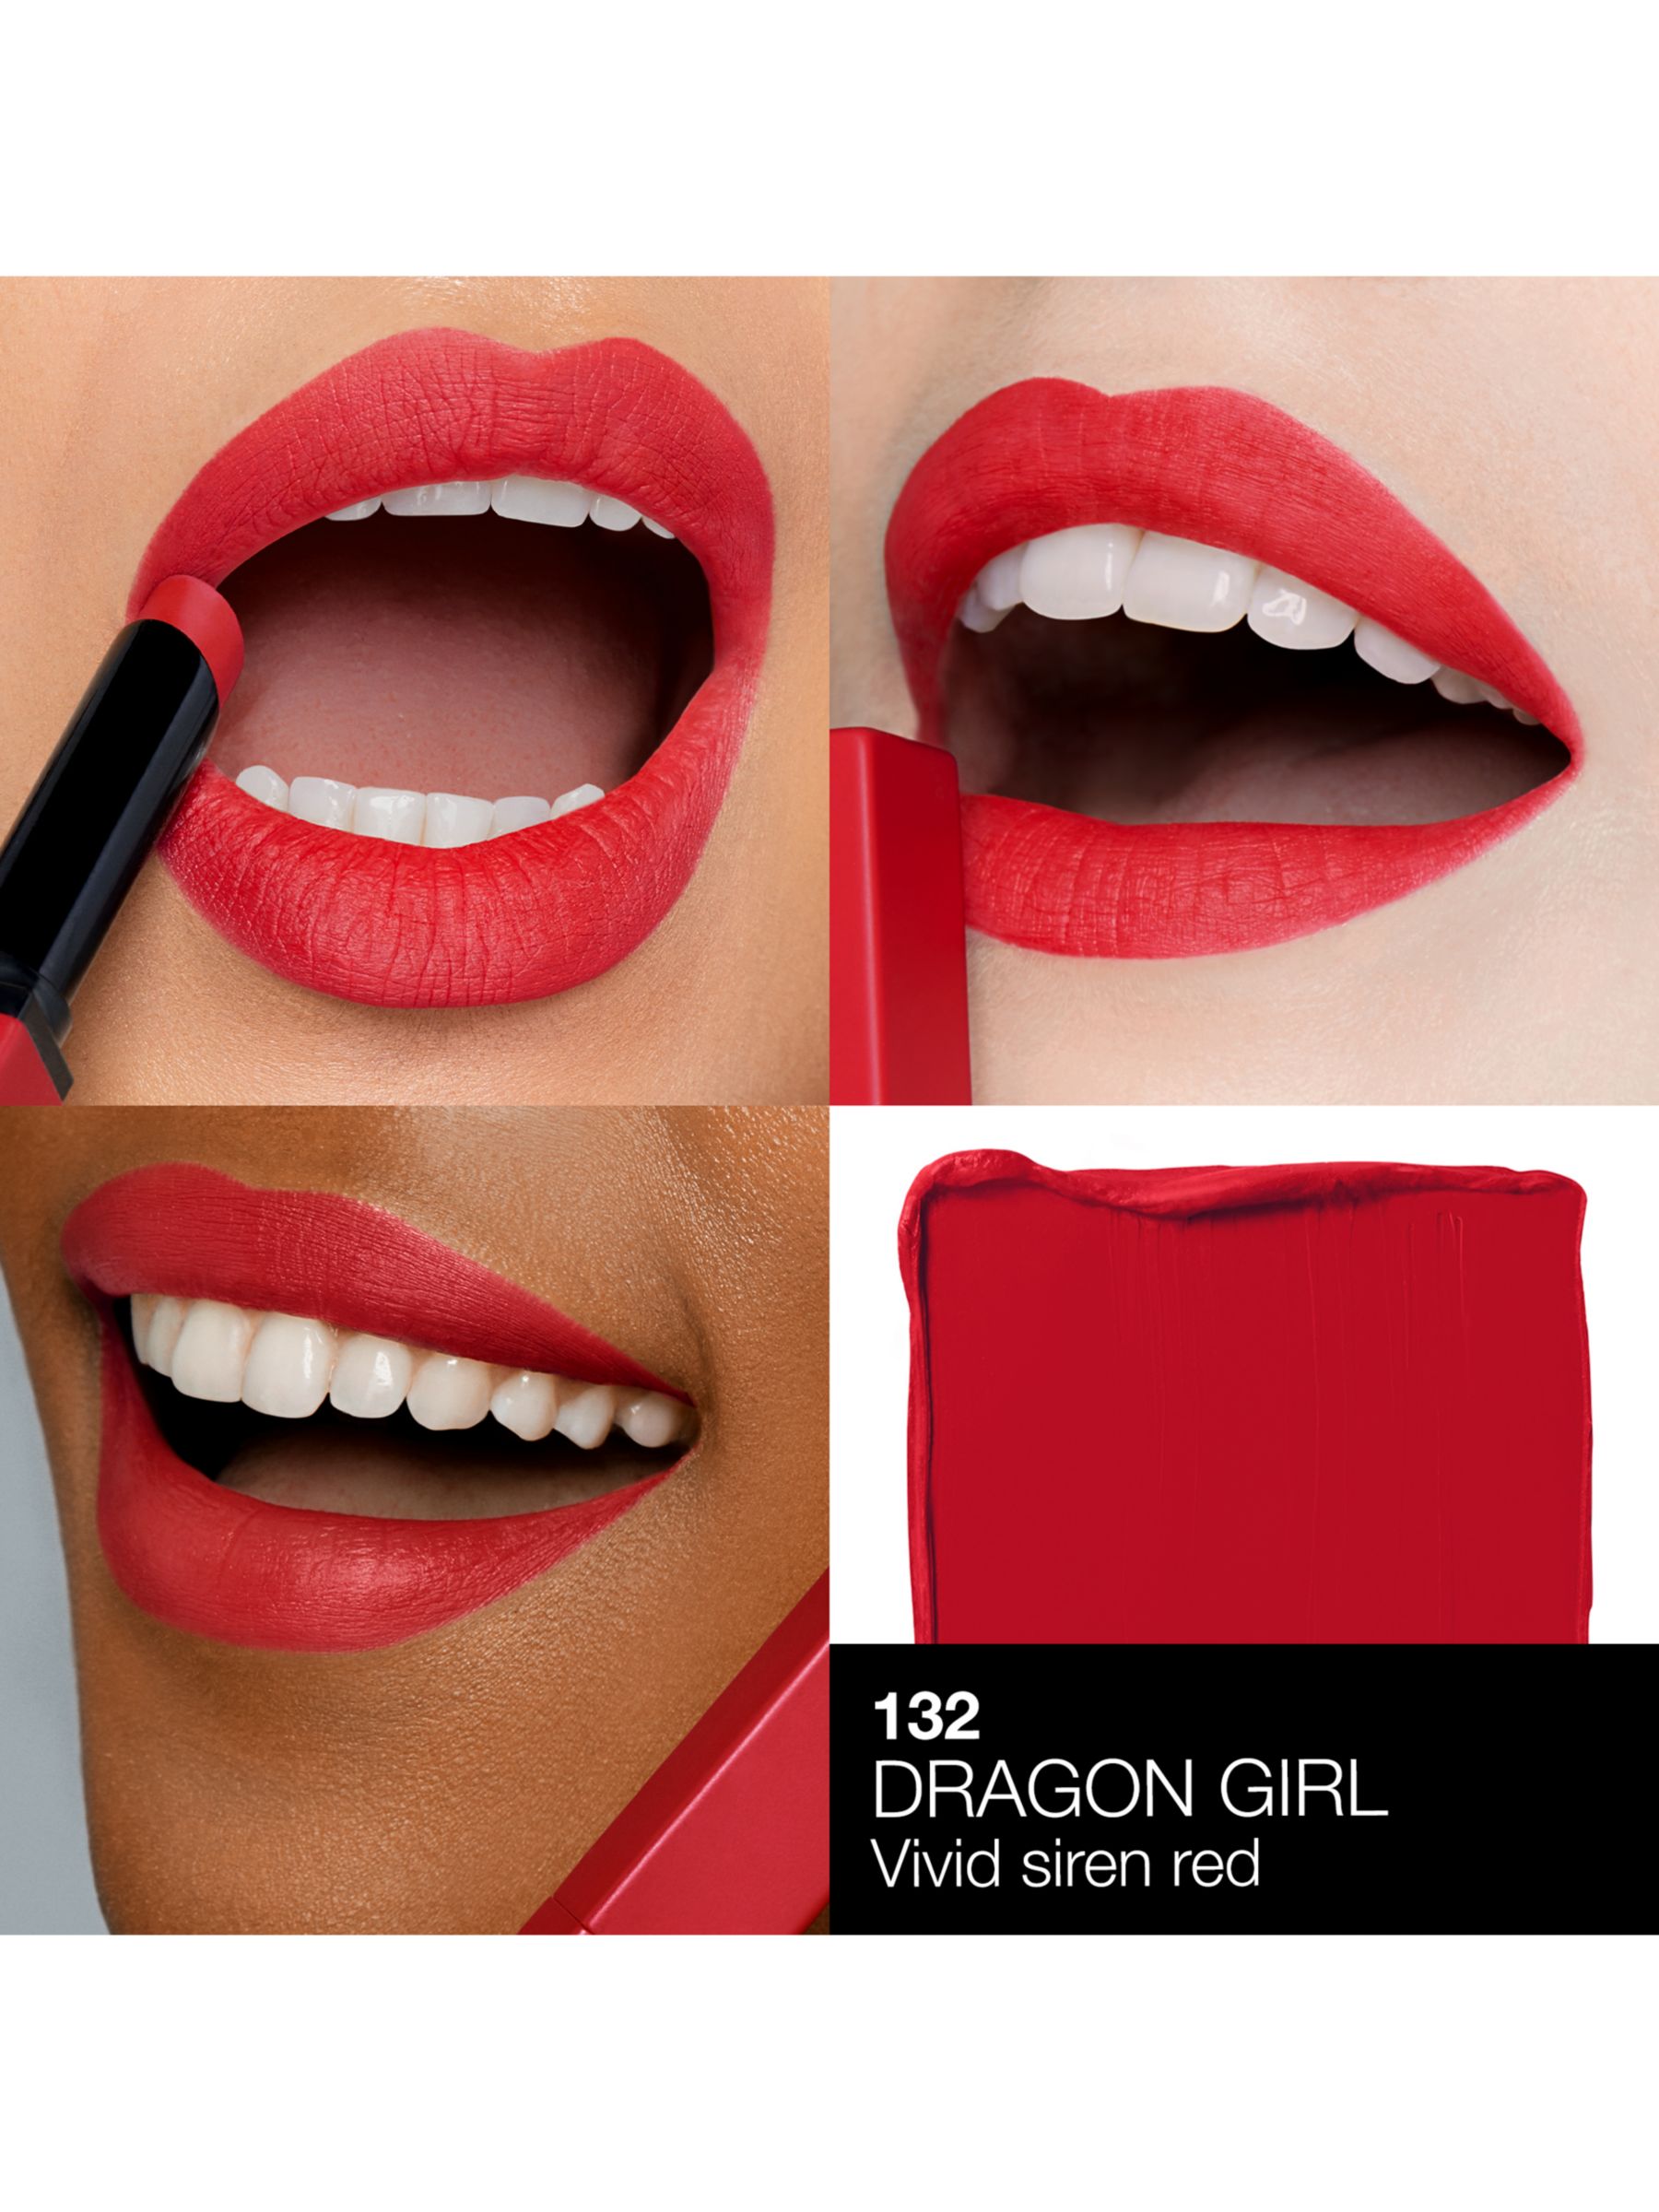 NARS Powermatte Lipstick, Dragon Girl 3